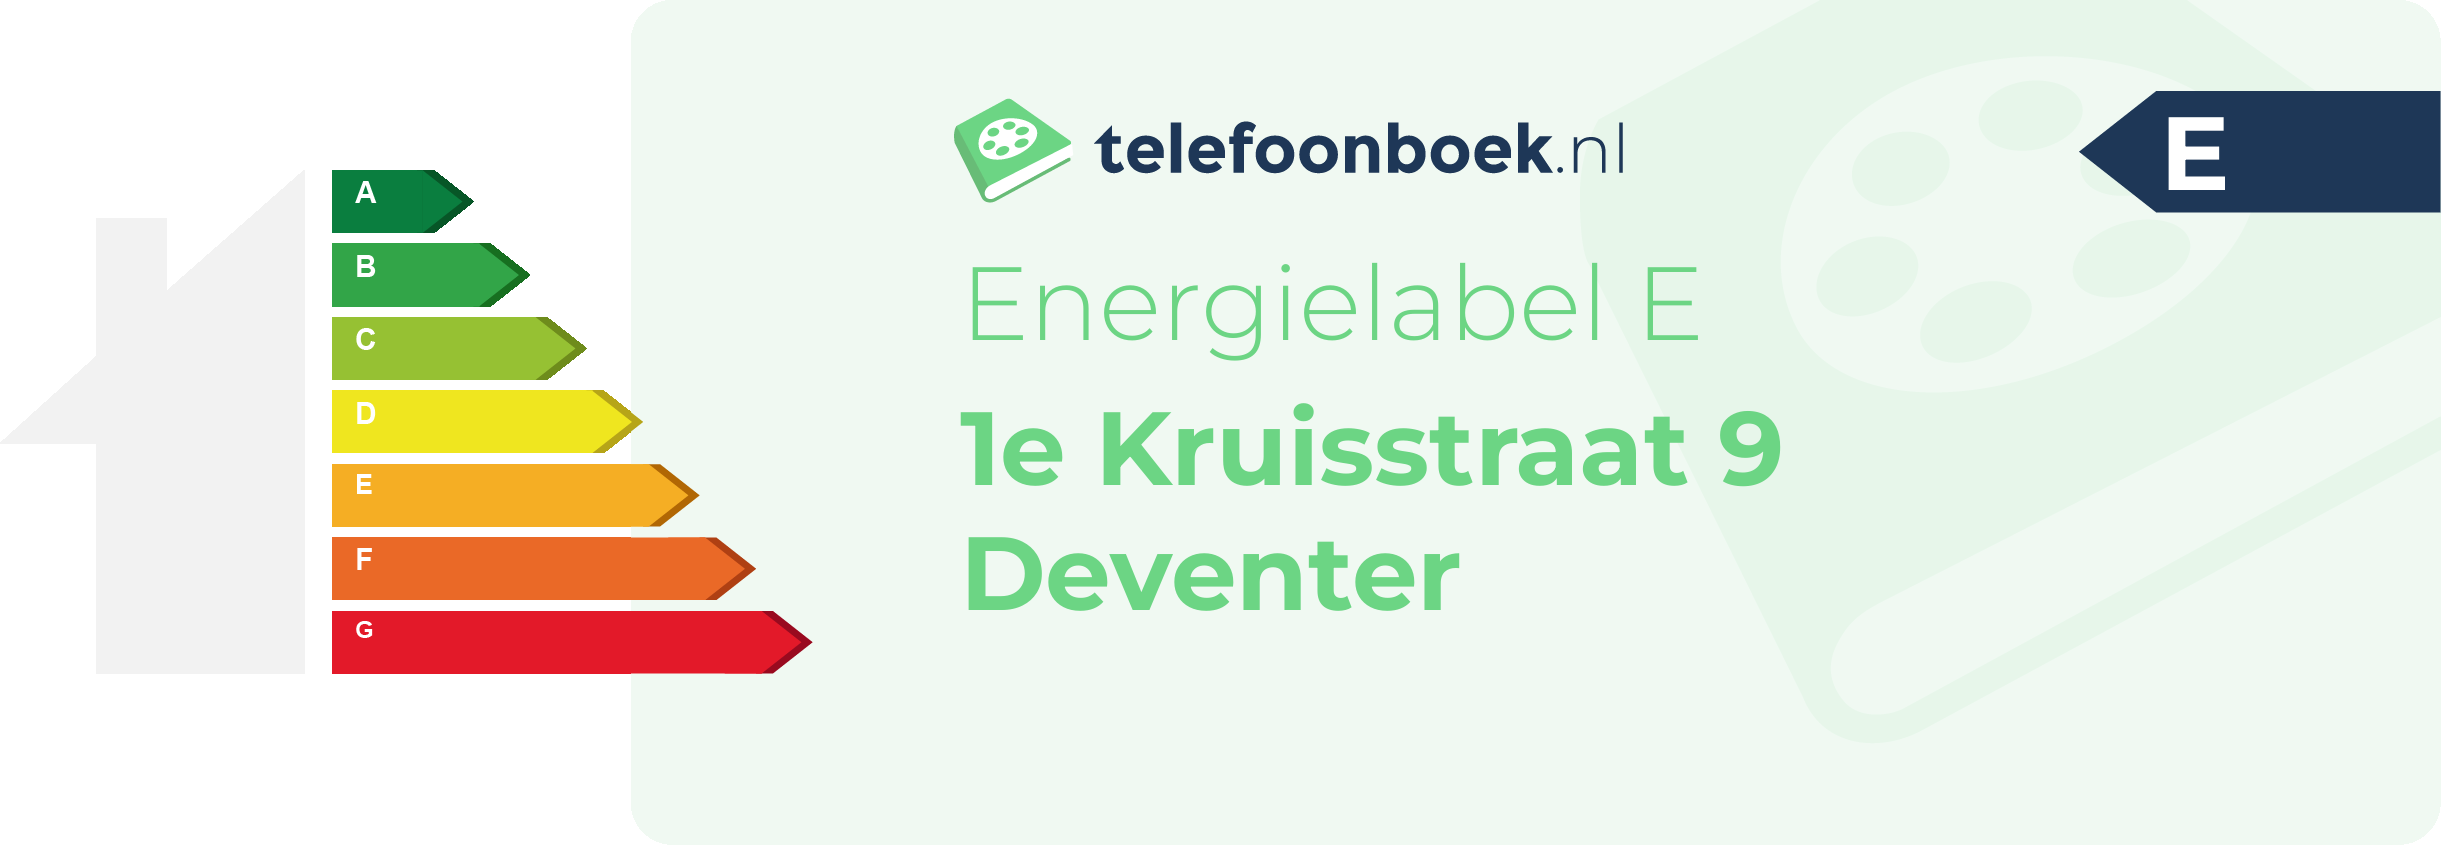 Energielabel 1e Kruisstraat 9 Deventer